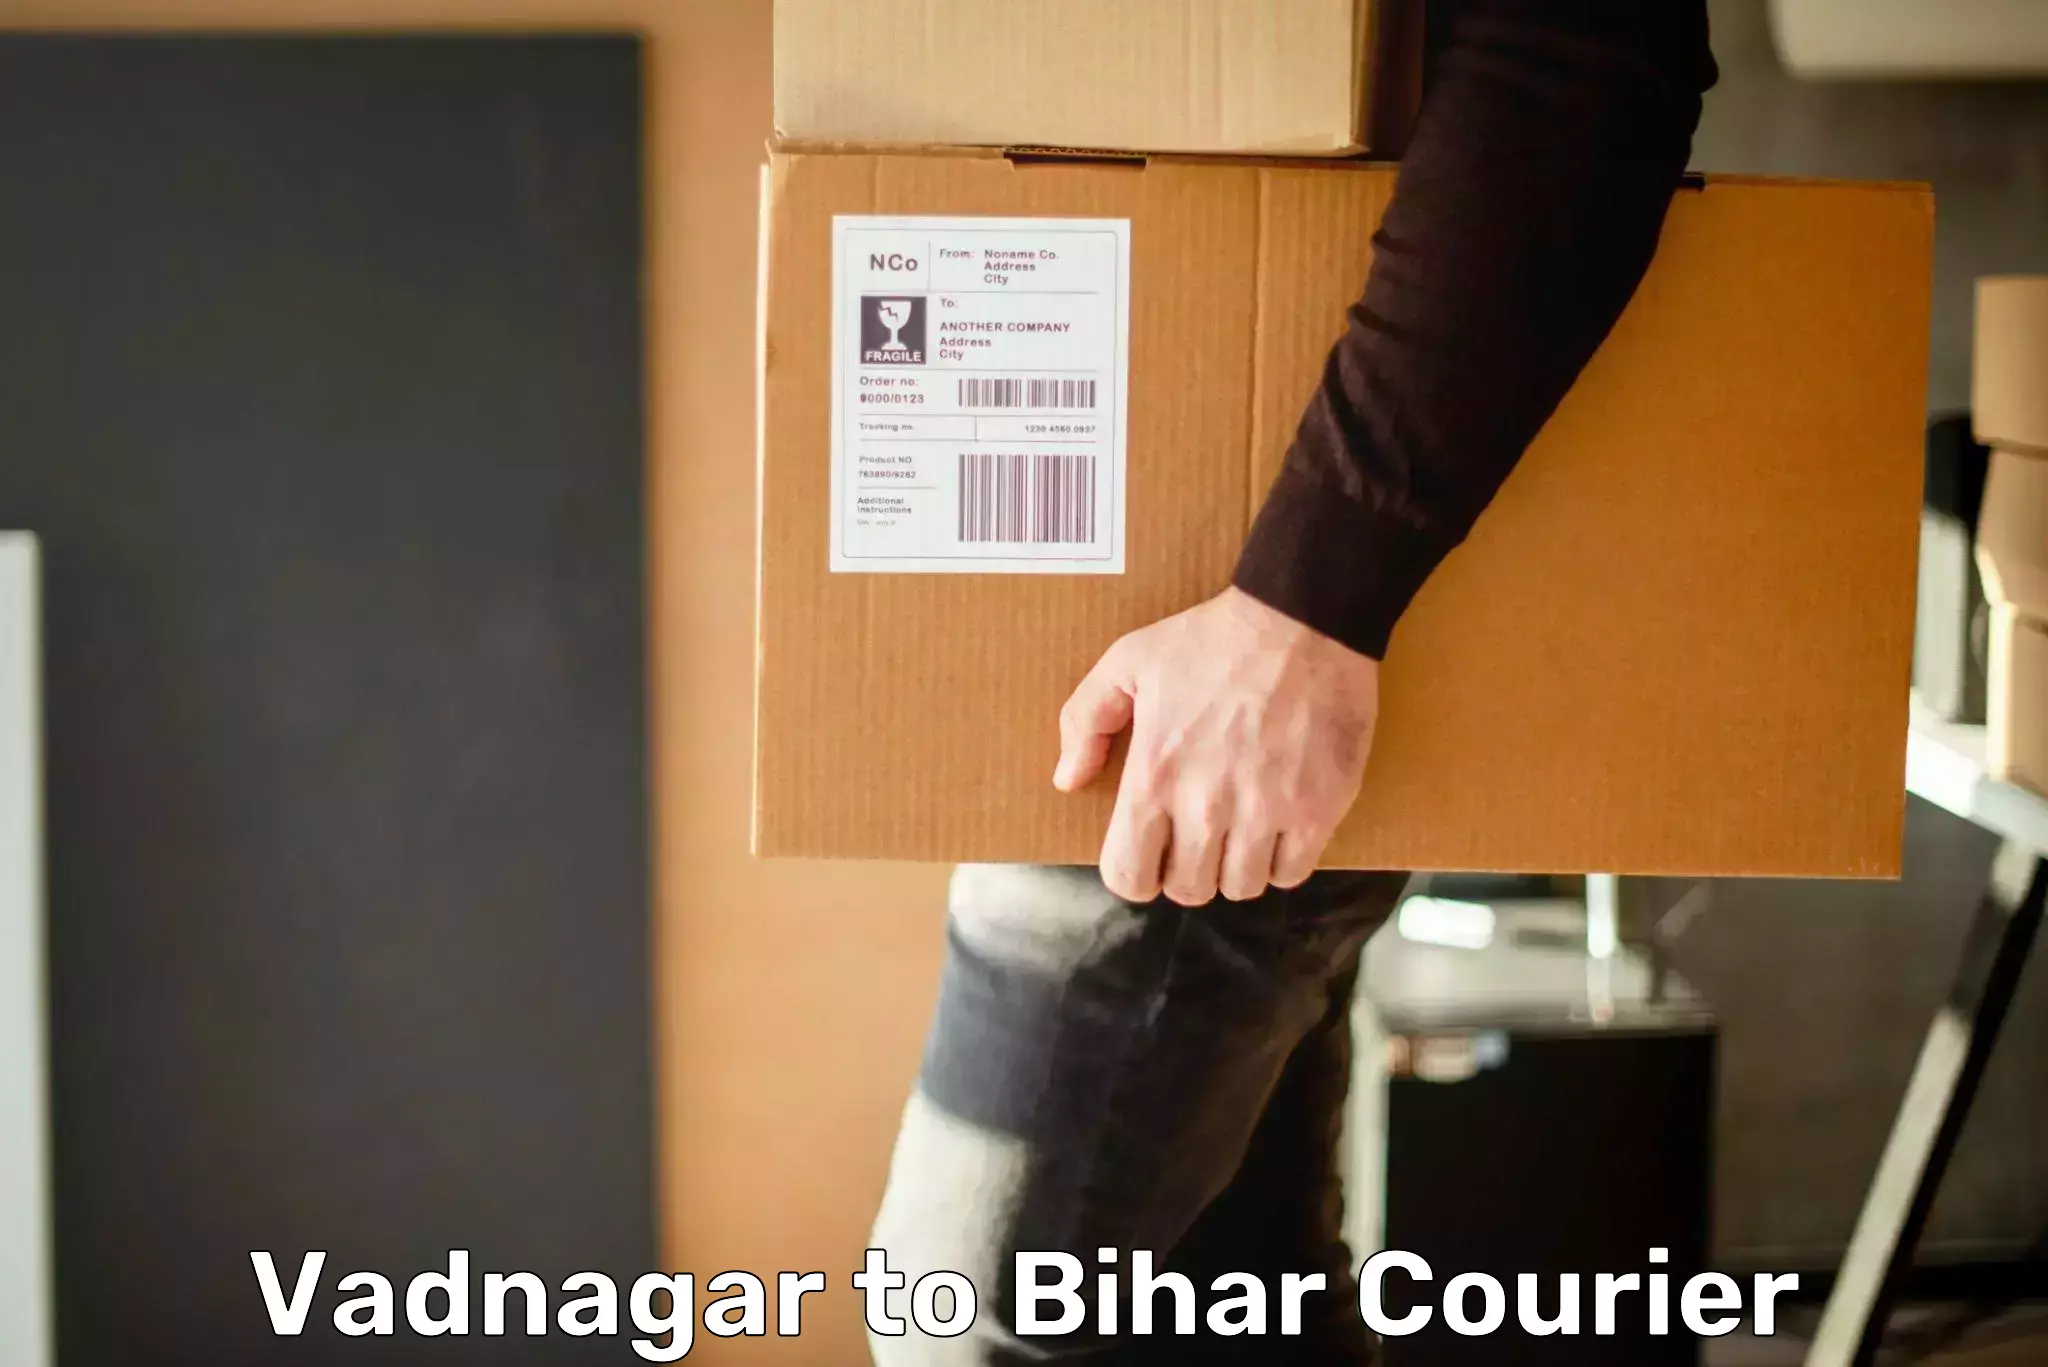 Courier service comparison Vadnagar to Mahnar Bazar